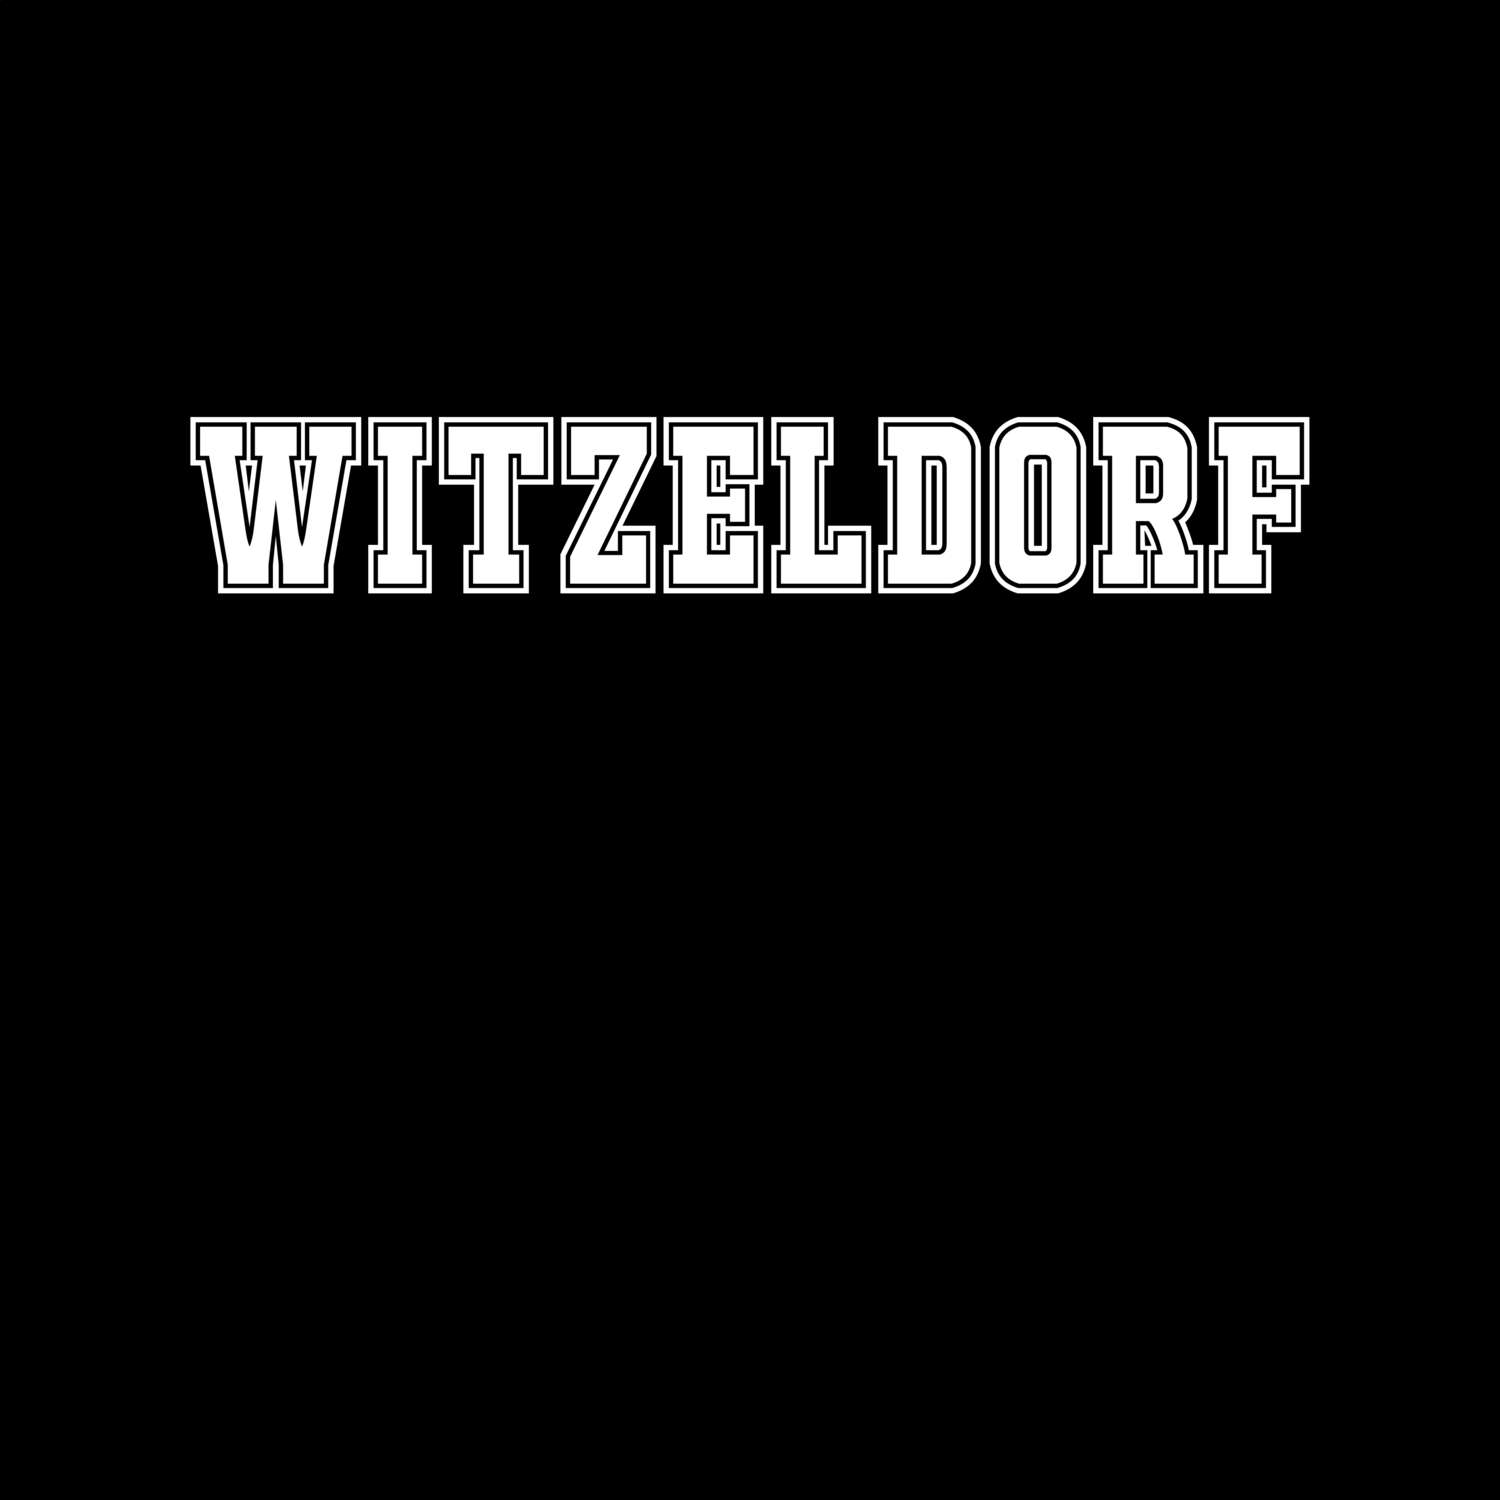 Witzeldorf T-Shirt »Classic«